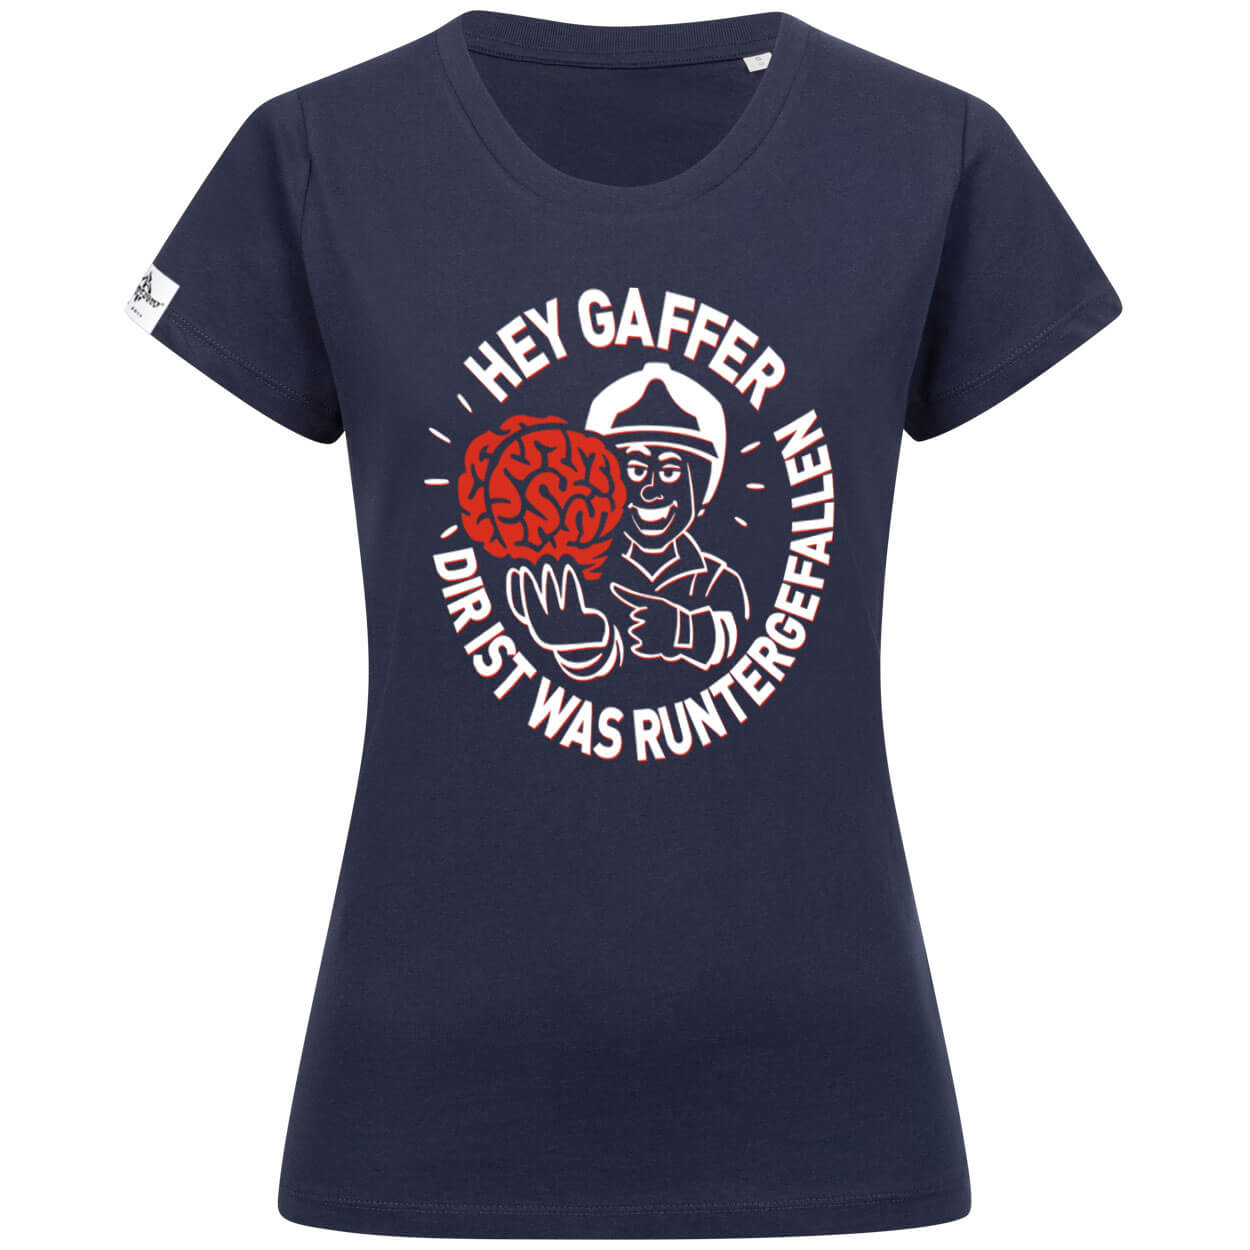 Hey Gaffer - Frauen T-Shirt